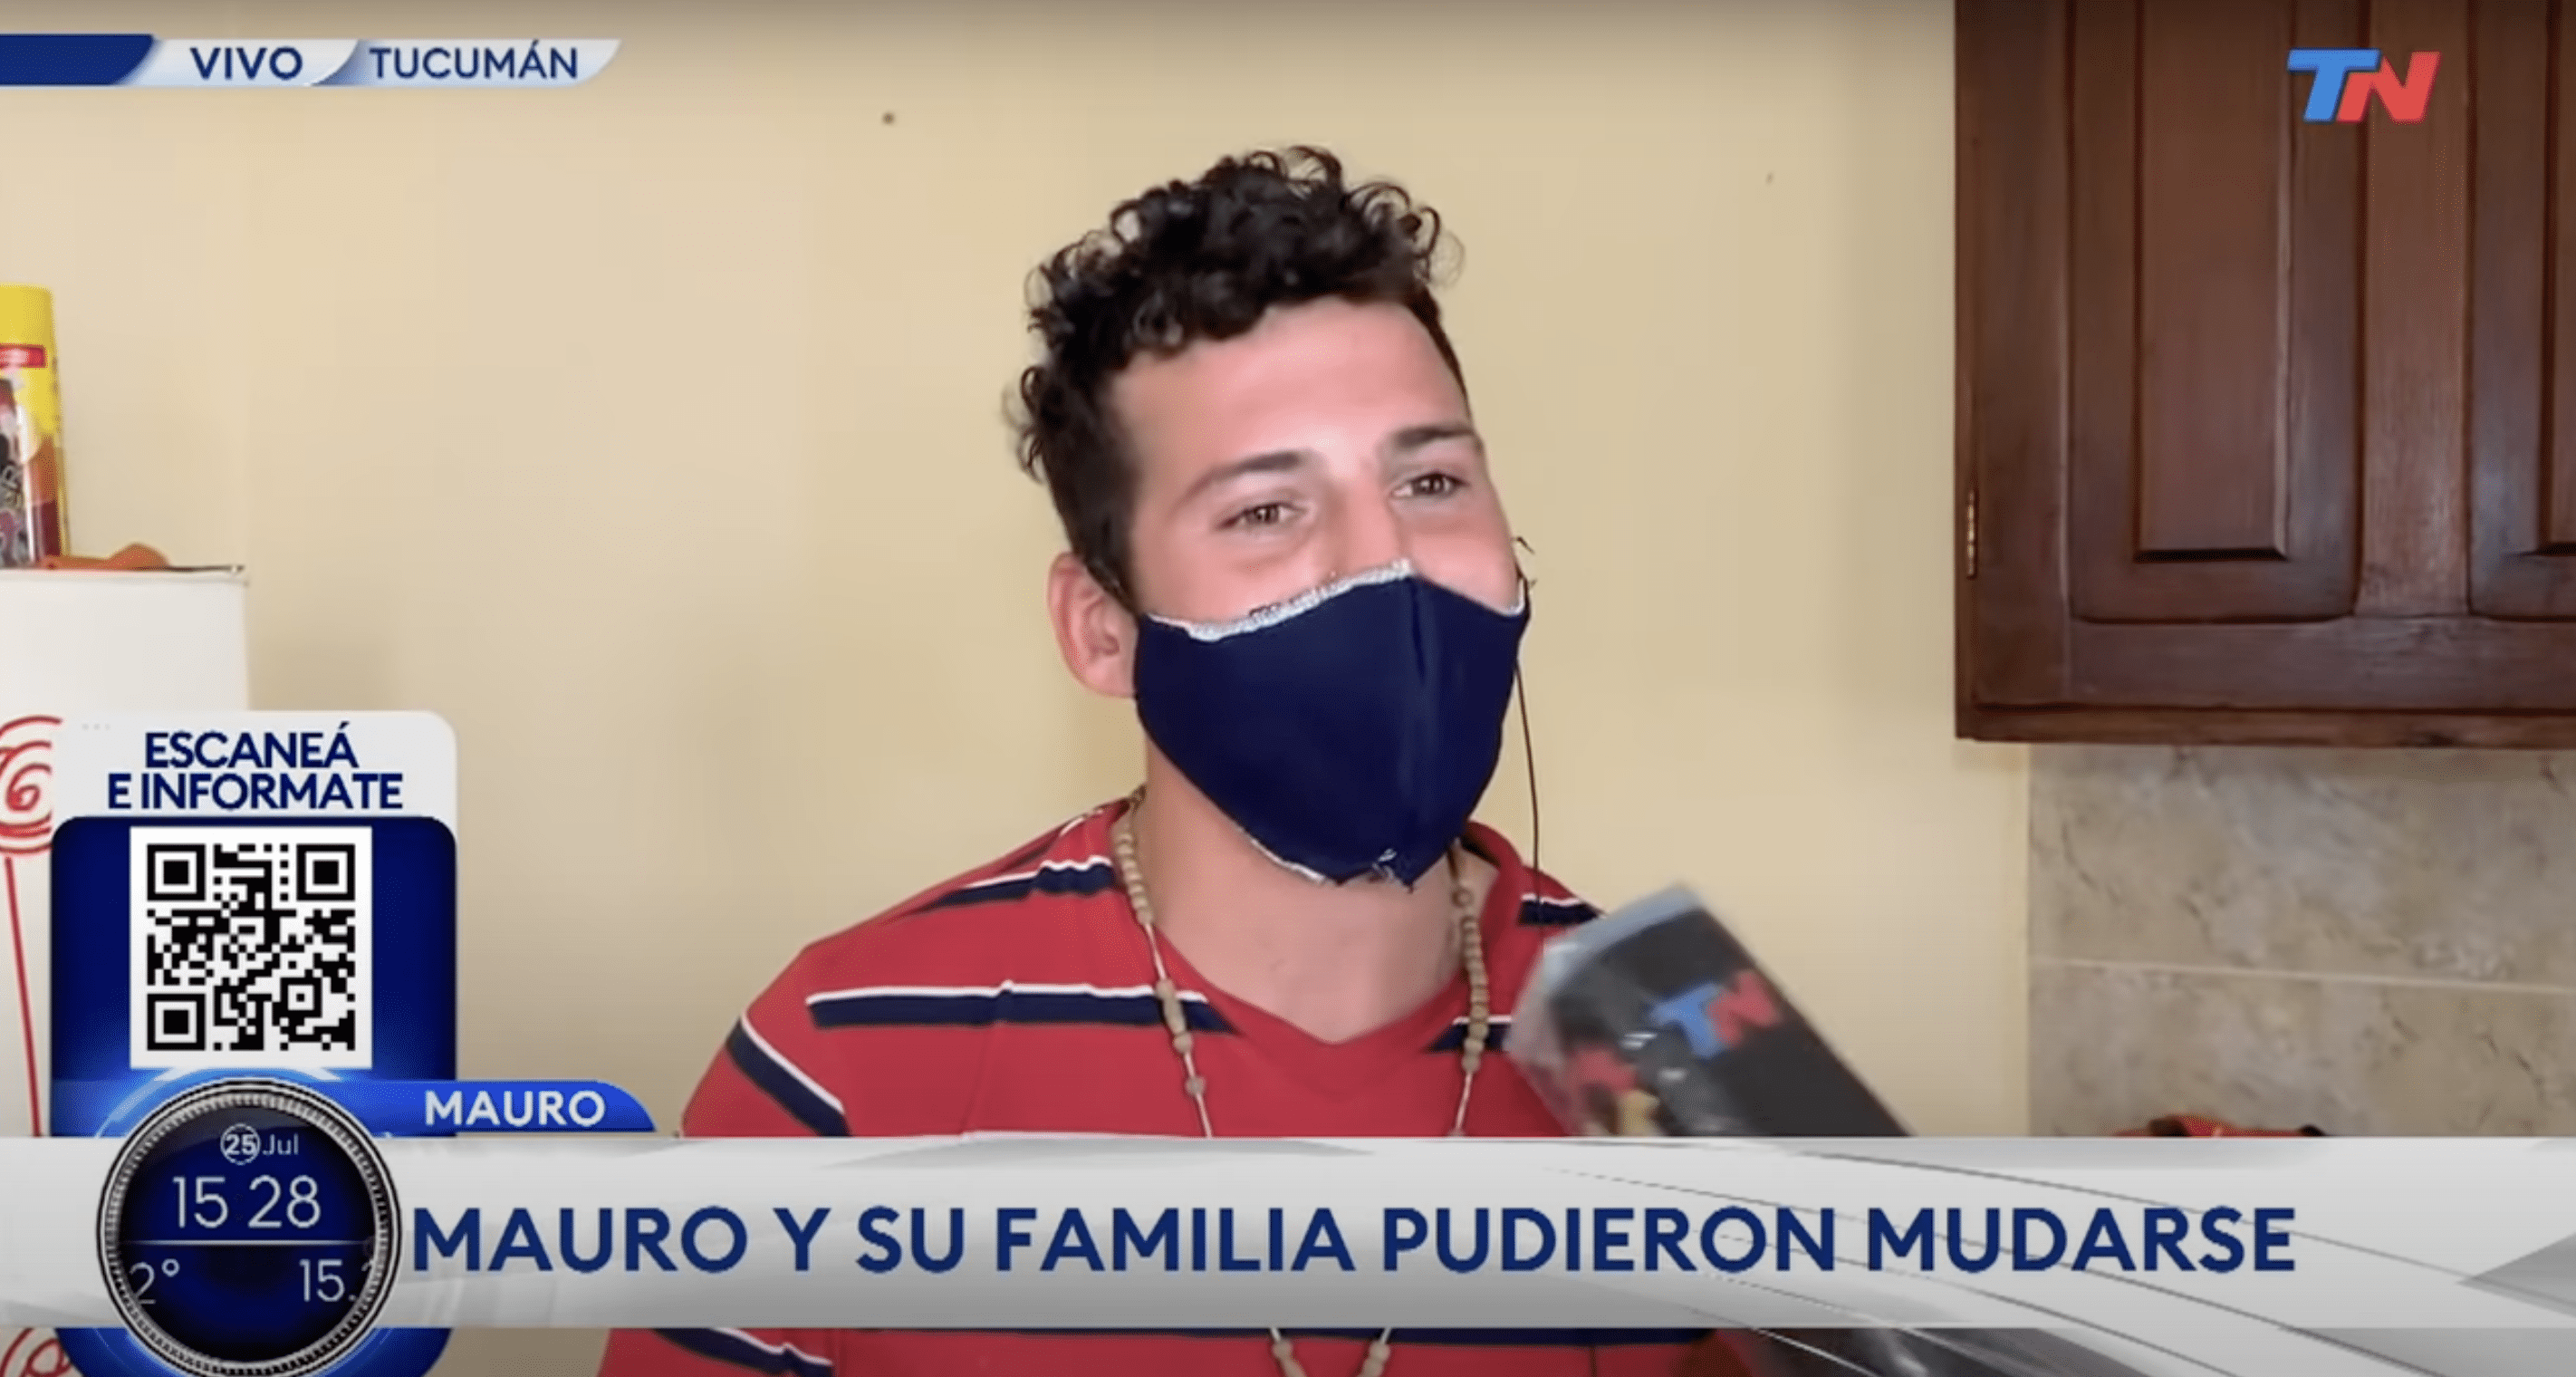 El joven padre argentino, Mauro. | Foto: YouTube.com/Todo Noticias